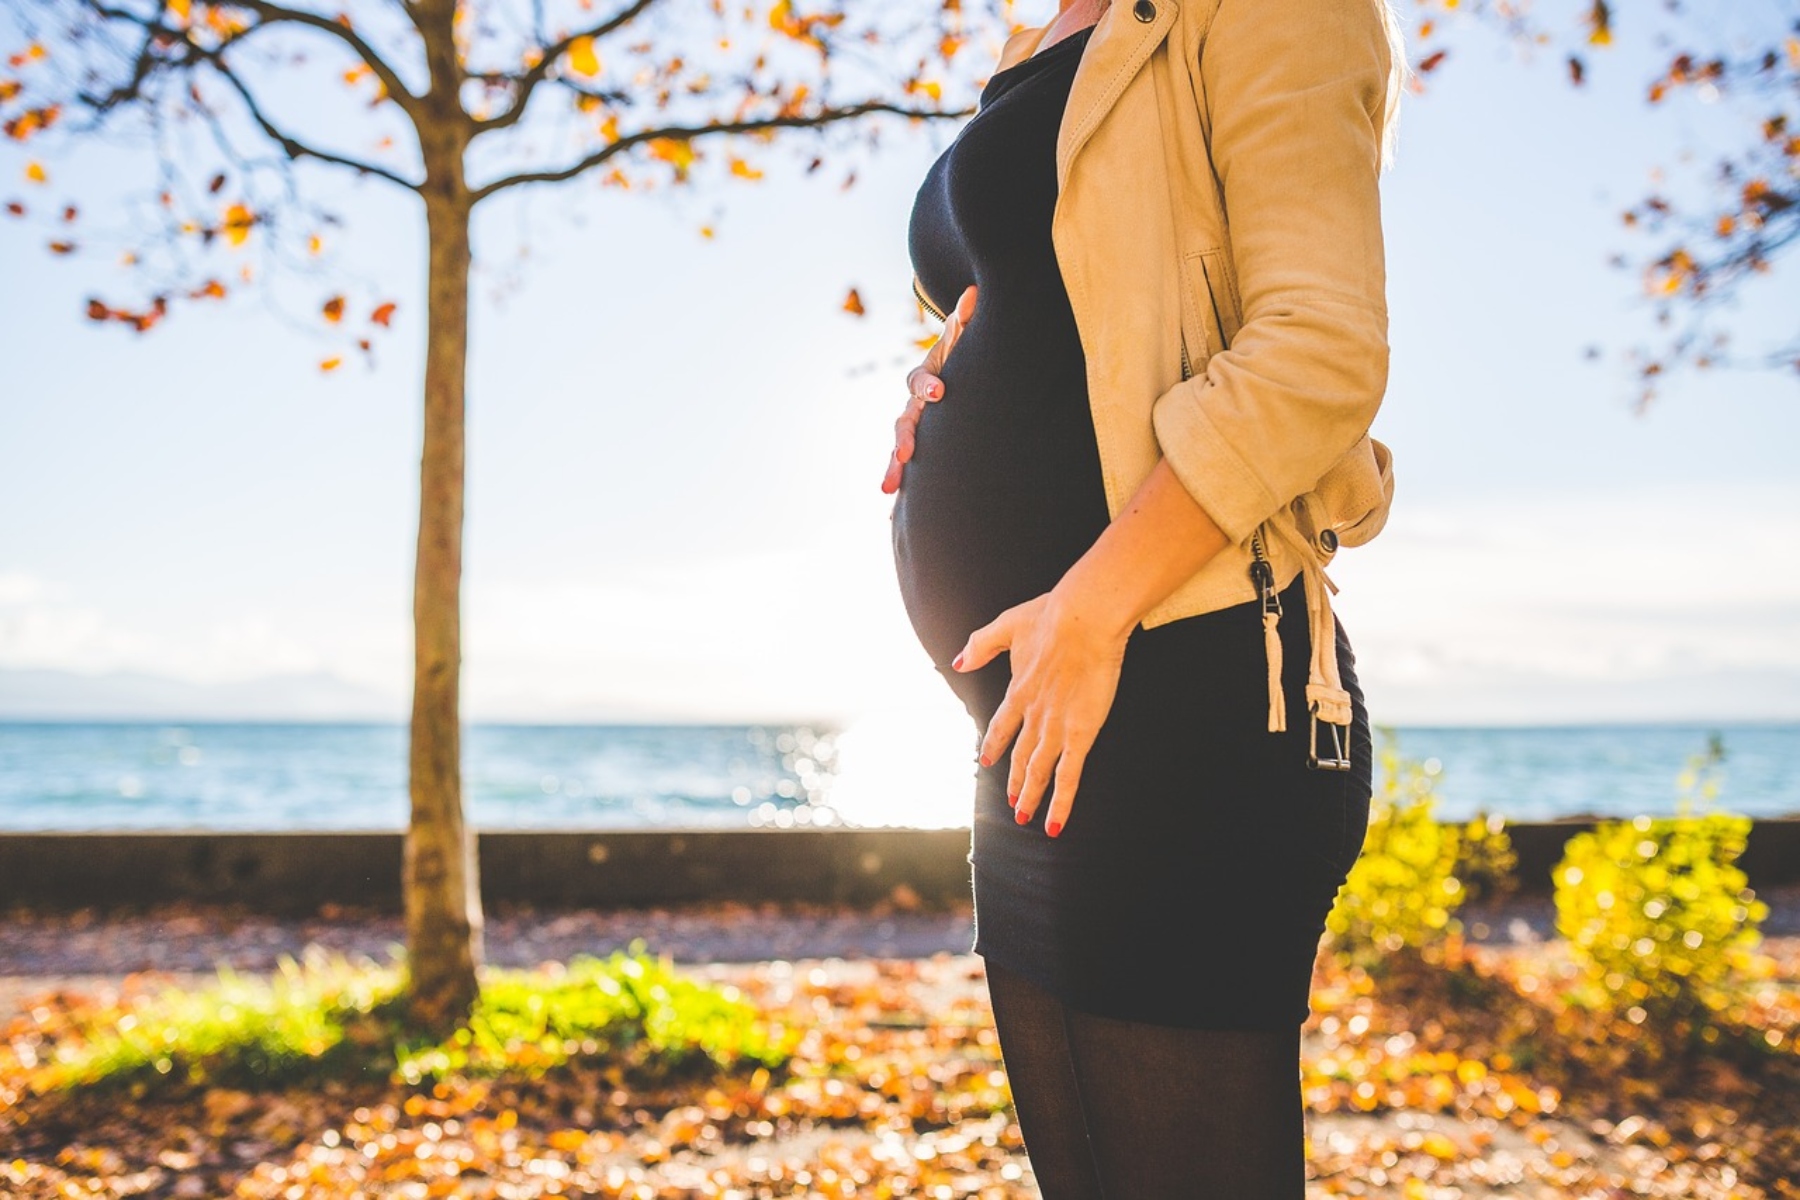 Εγκυμοσύνη τοκετός έγκλημα: Απαιτείται ευαισθητοποίηση στις ανθρωποκτονίες με θύματα έγκυες και νέες μητέρες